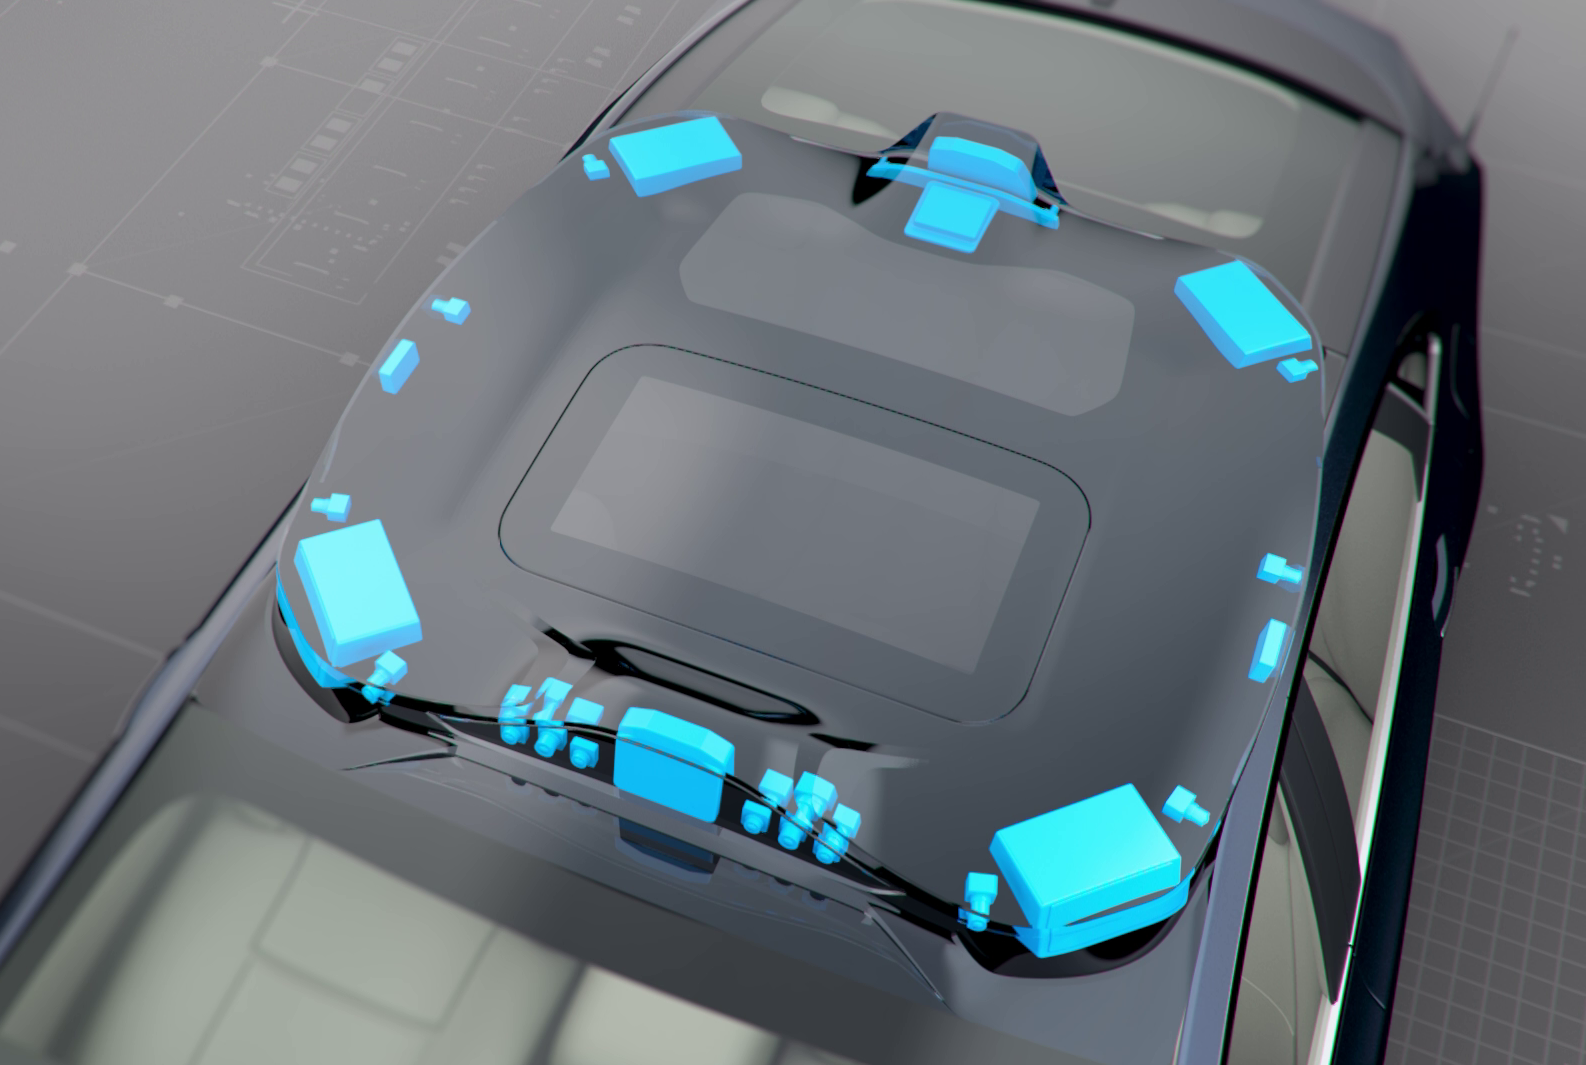 Solutions for autonomous driving